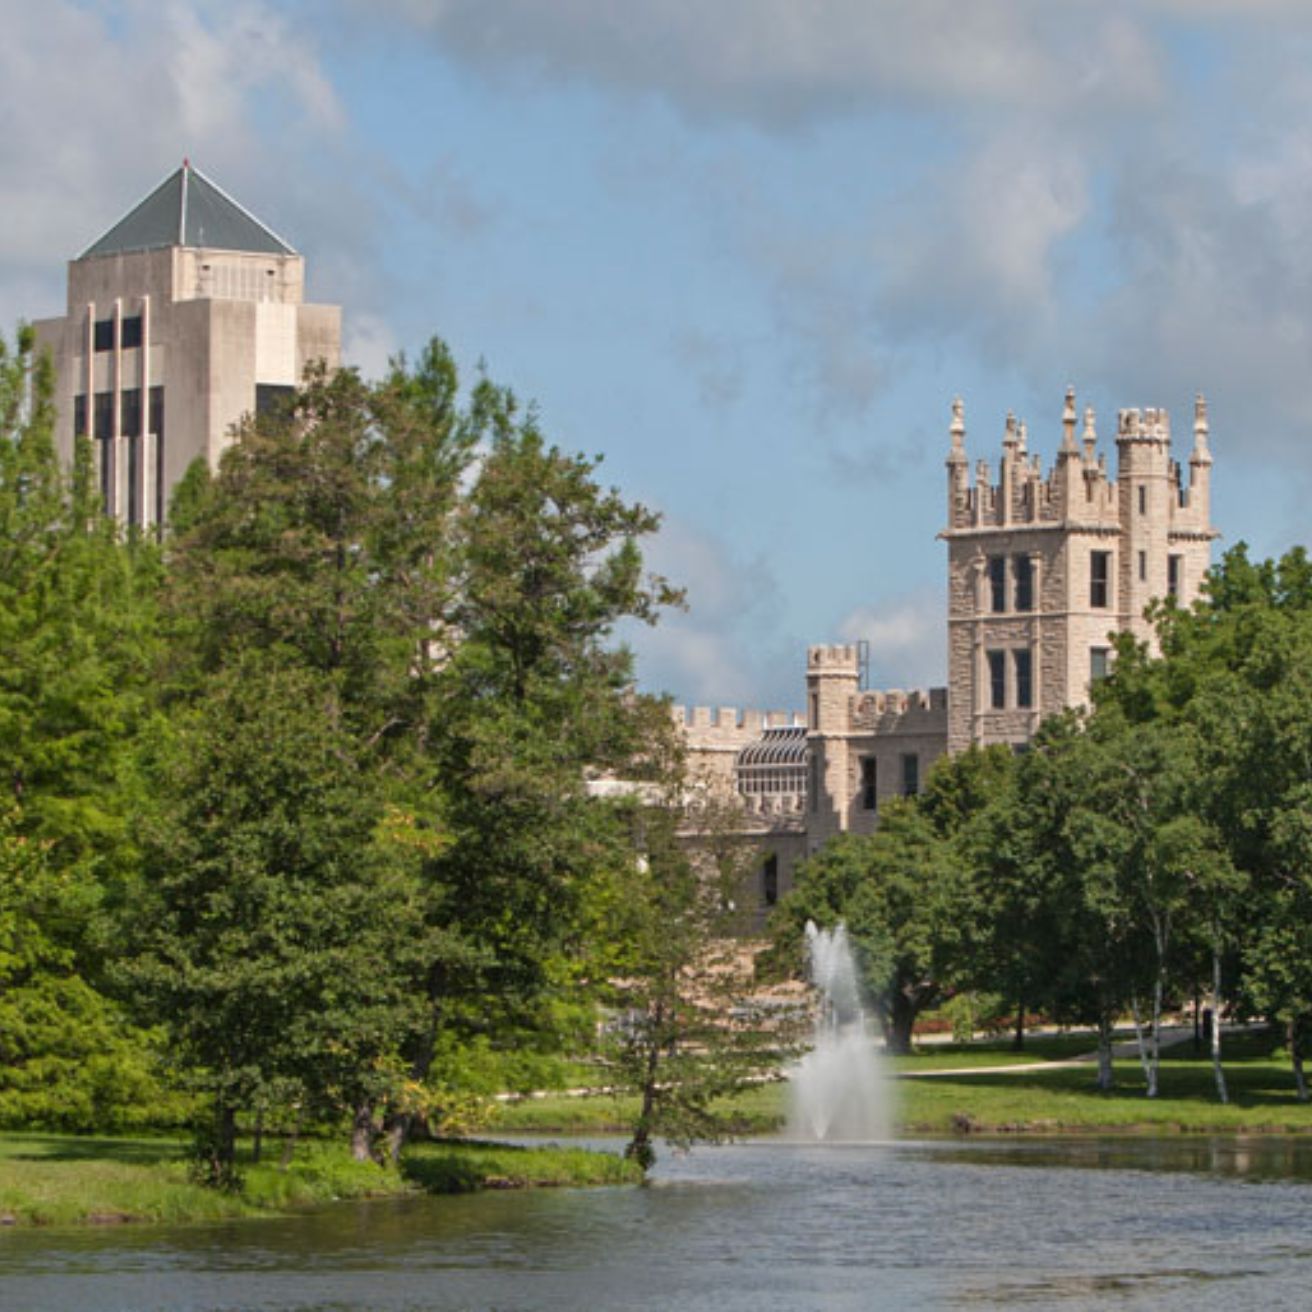 Northern Illinois University campus